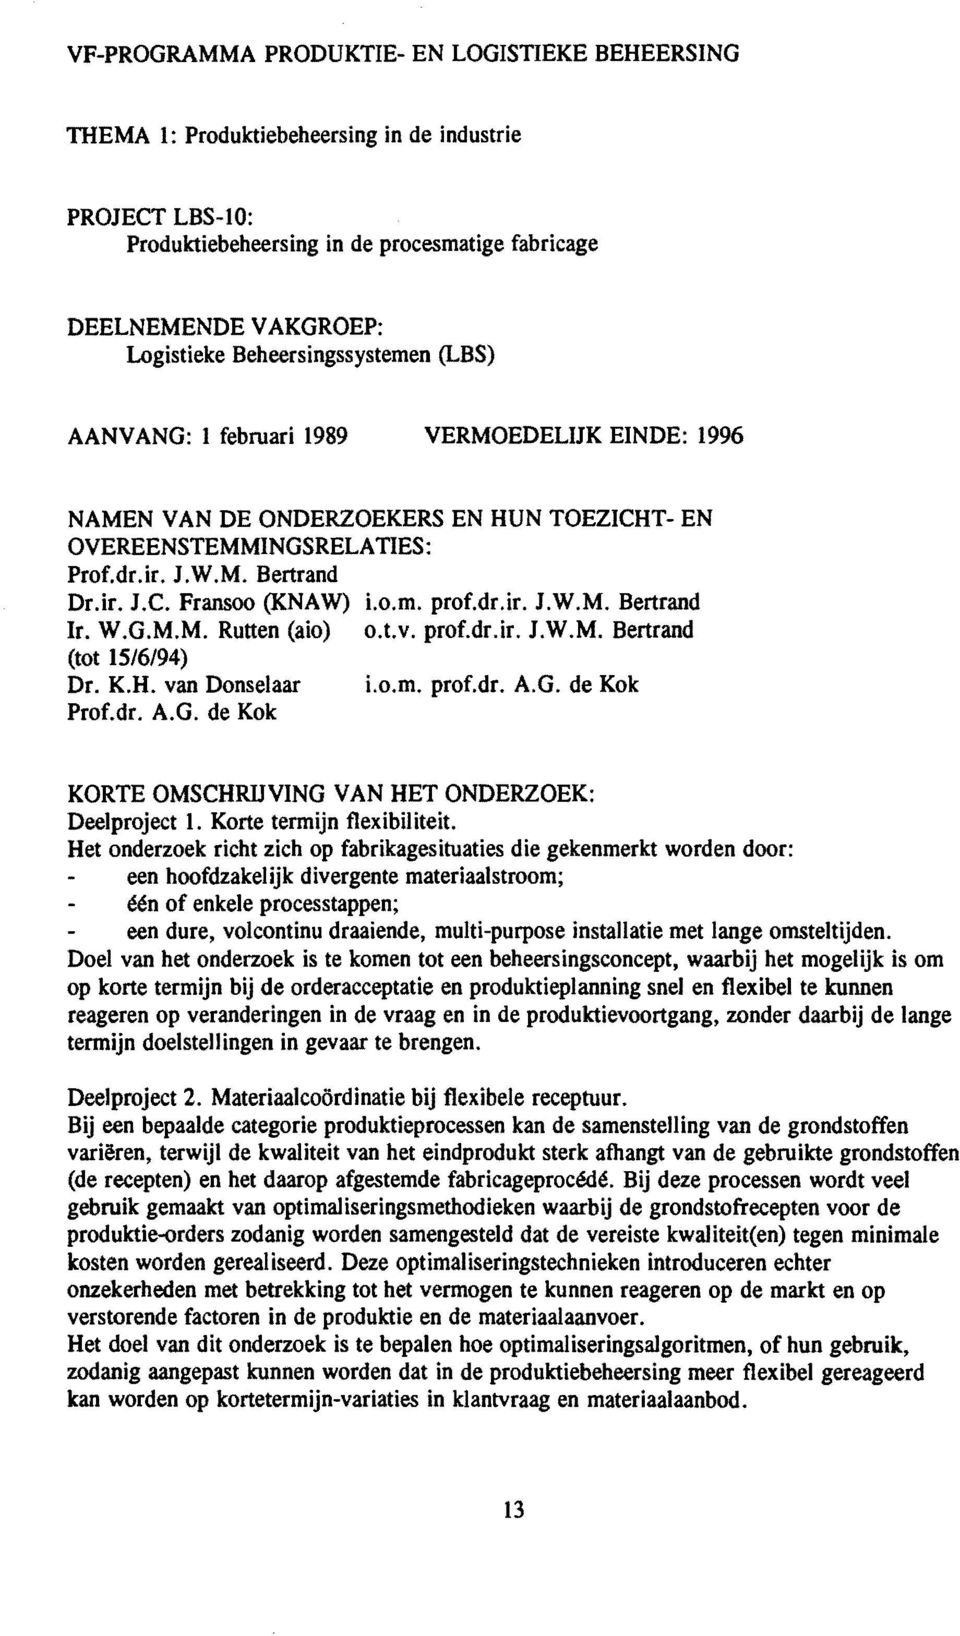 W.G.M.M. Rutten (aio) (tot 15/6/94) Dr. K.H. van Donsetaar Prof.dr. A.G. de Kok i.o.m. prof.dr.ir. J.W.M. Beetrand o.t.v. prof.dr.ir. J.W.M. Beetrand i.o.m. prof.dr. A.G. de Kok KORTE OMSCHRIJVING VAN HET ONDERZOEK: Deelproject 1.